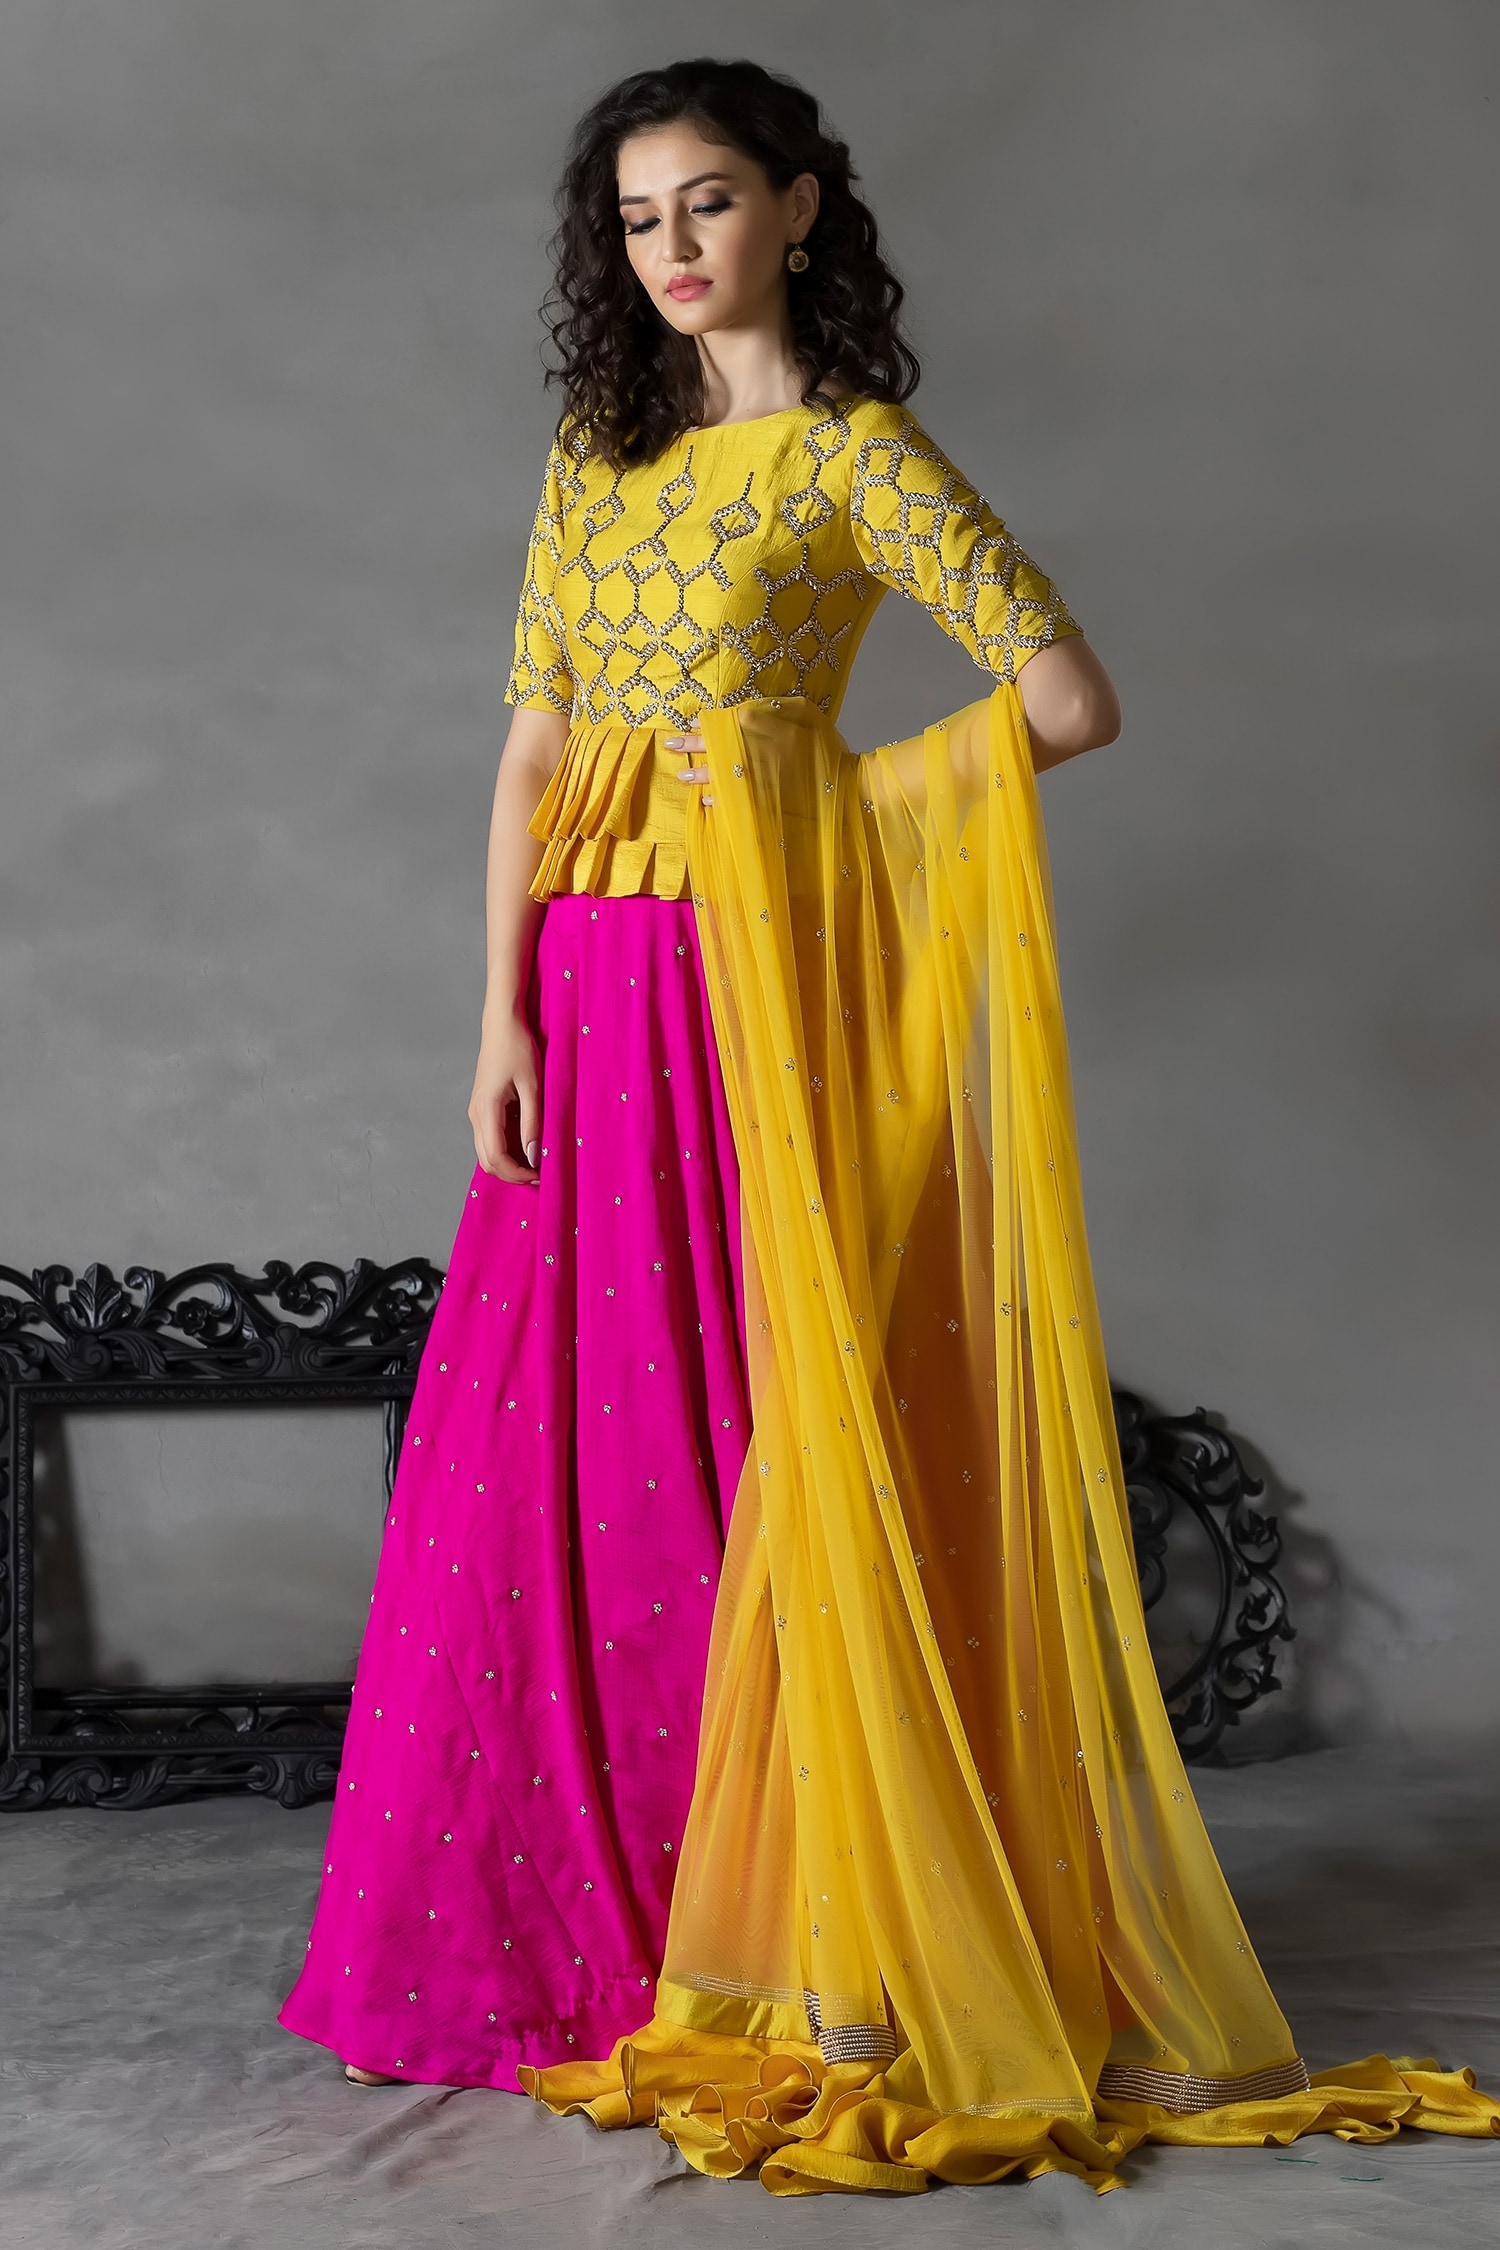 Hot Pink Marodi Peplum with Yellow Embroidered Lehenga – Swati Vijaivargie